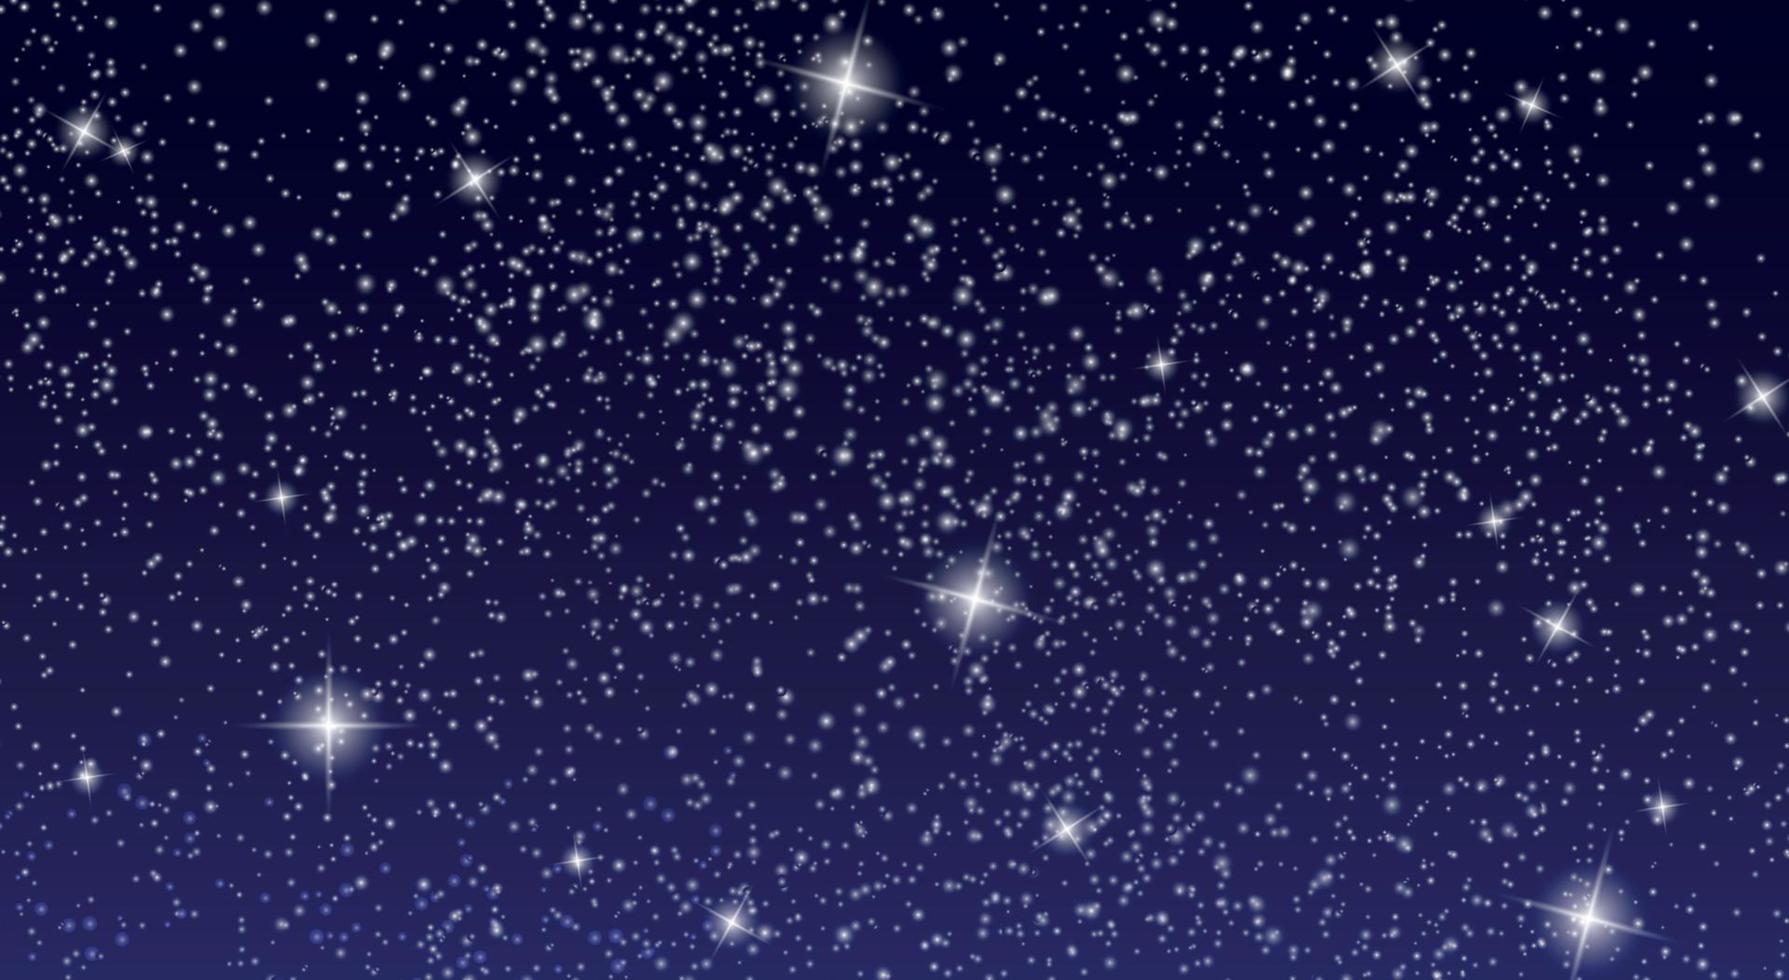 cielo estrellado realista con estrellas brillantes en el cielo nocturno. ilustración vectorial vector